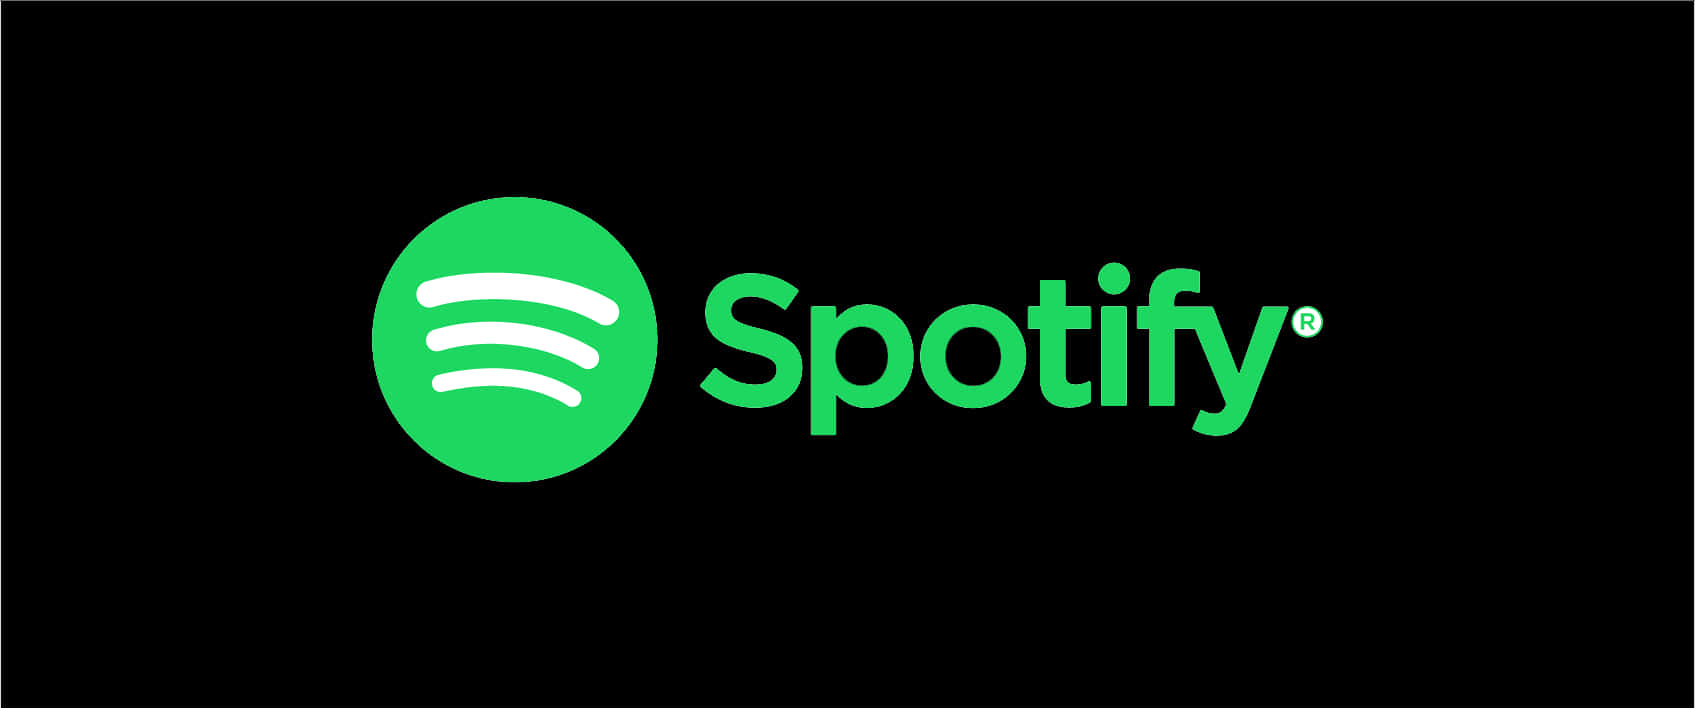 Spotify Logo Branding PNG image